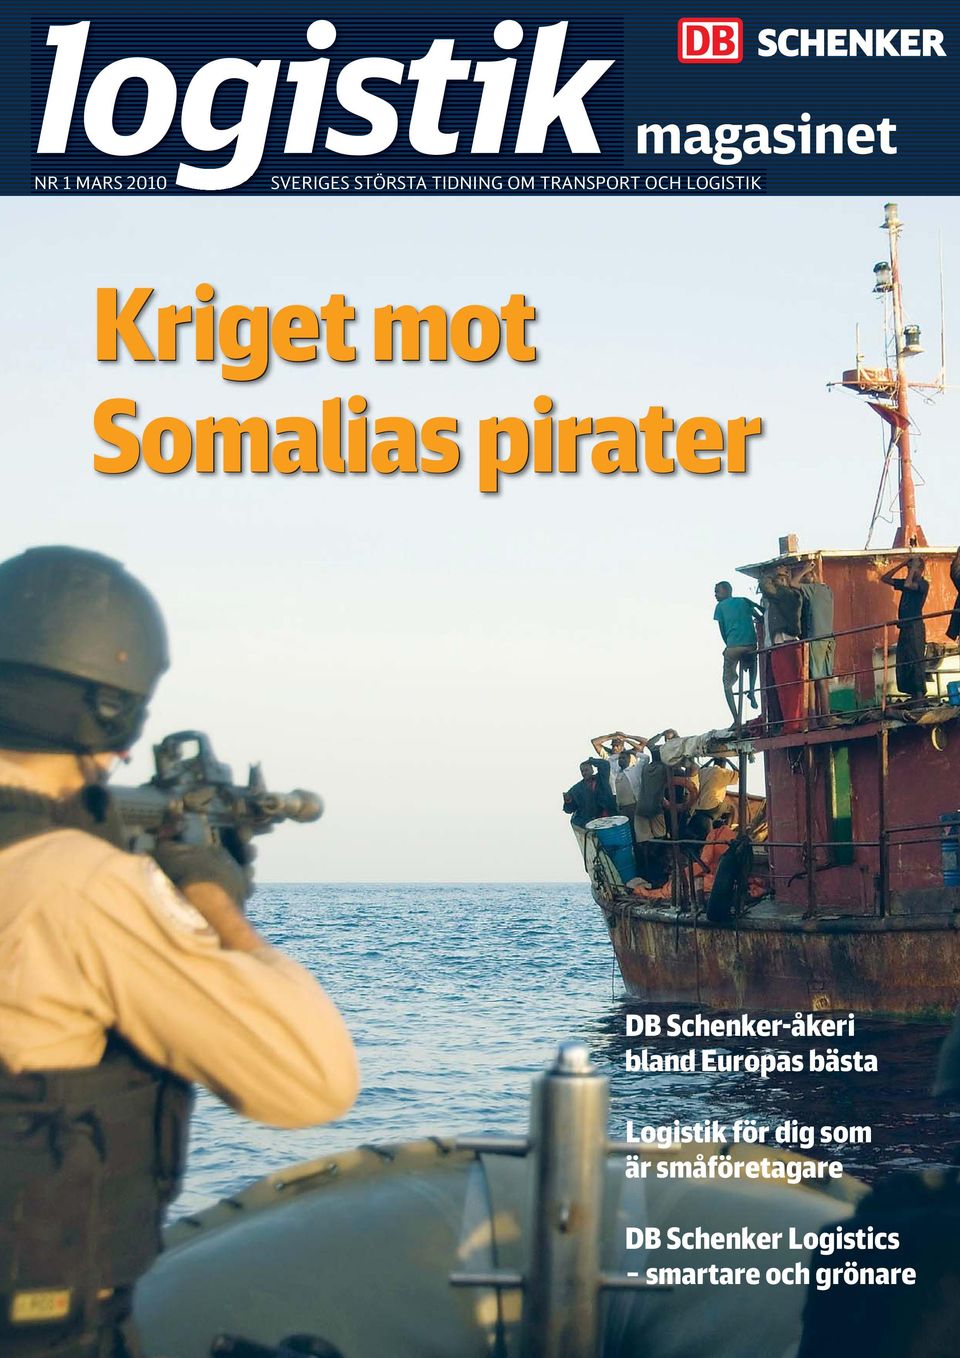 Somalias pirater DB Schenker-åkeri bland Europas bästa